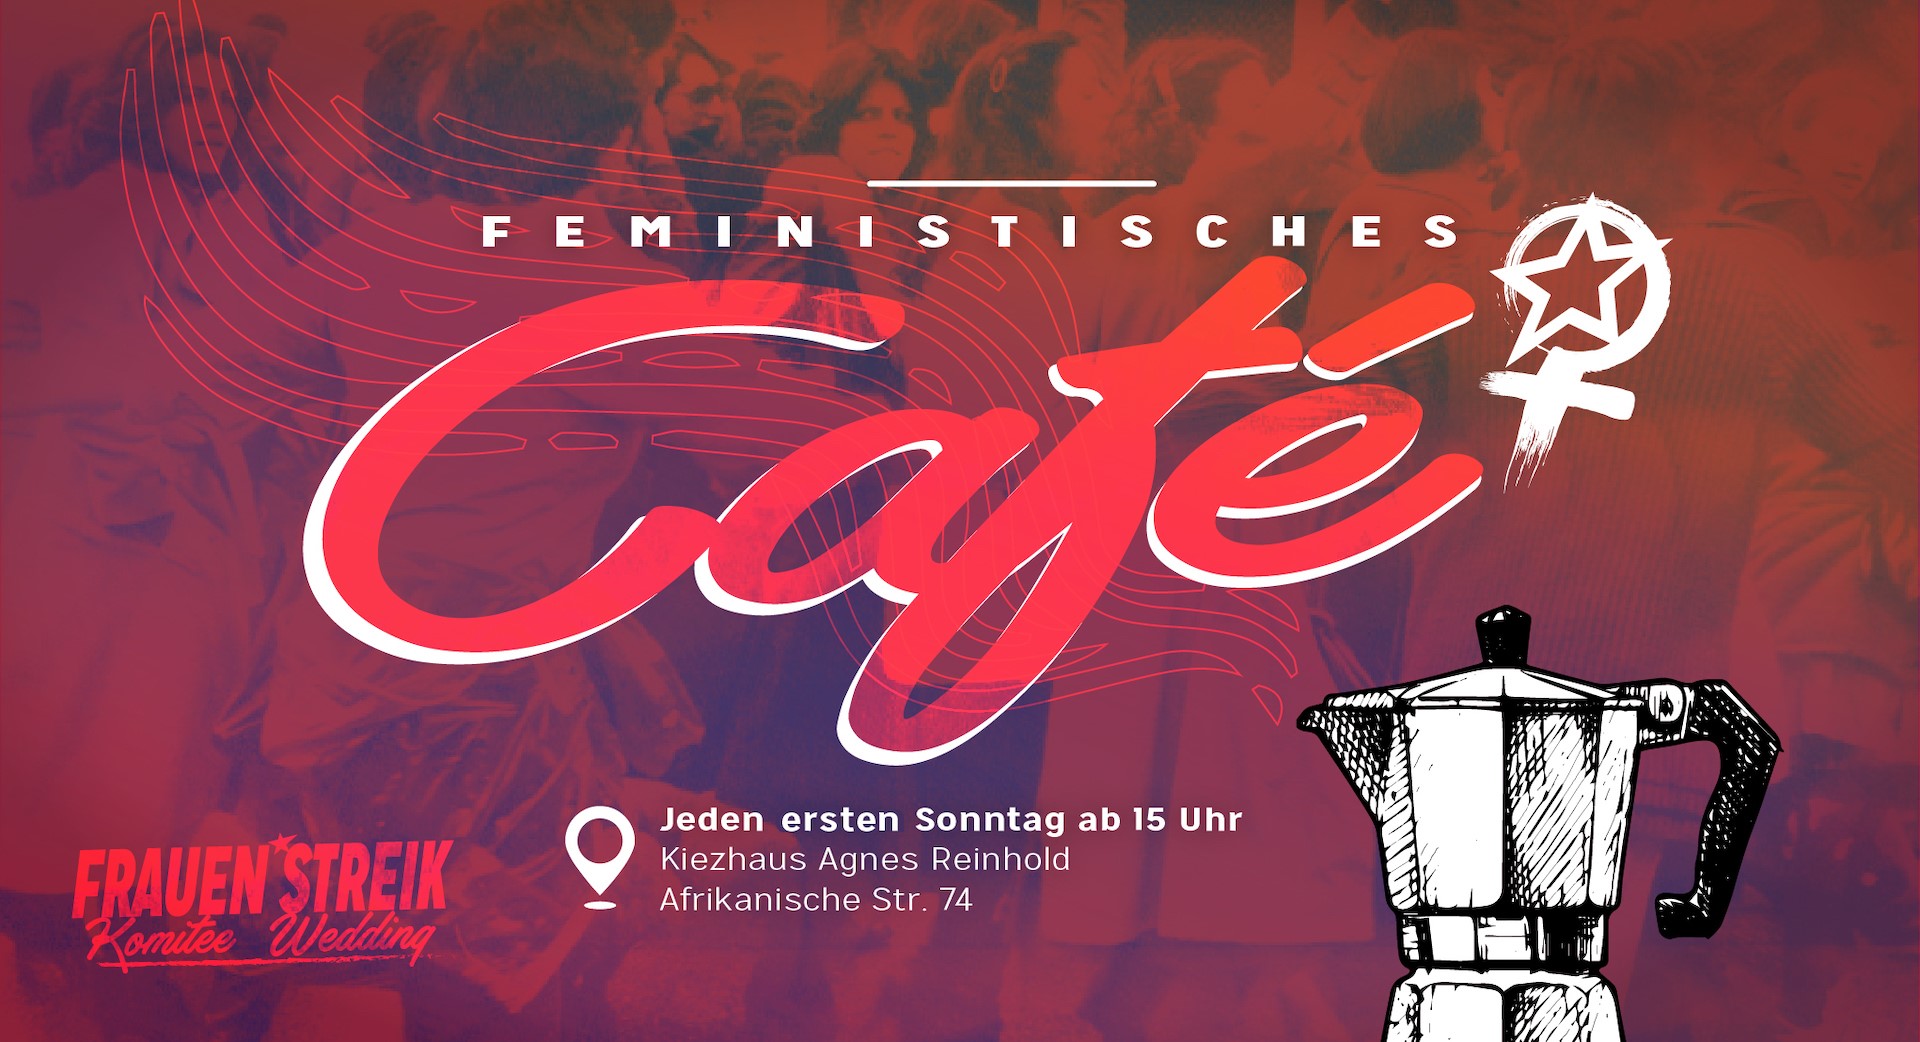 Feministisches Café